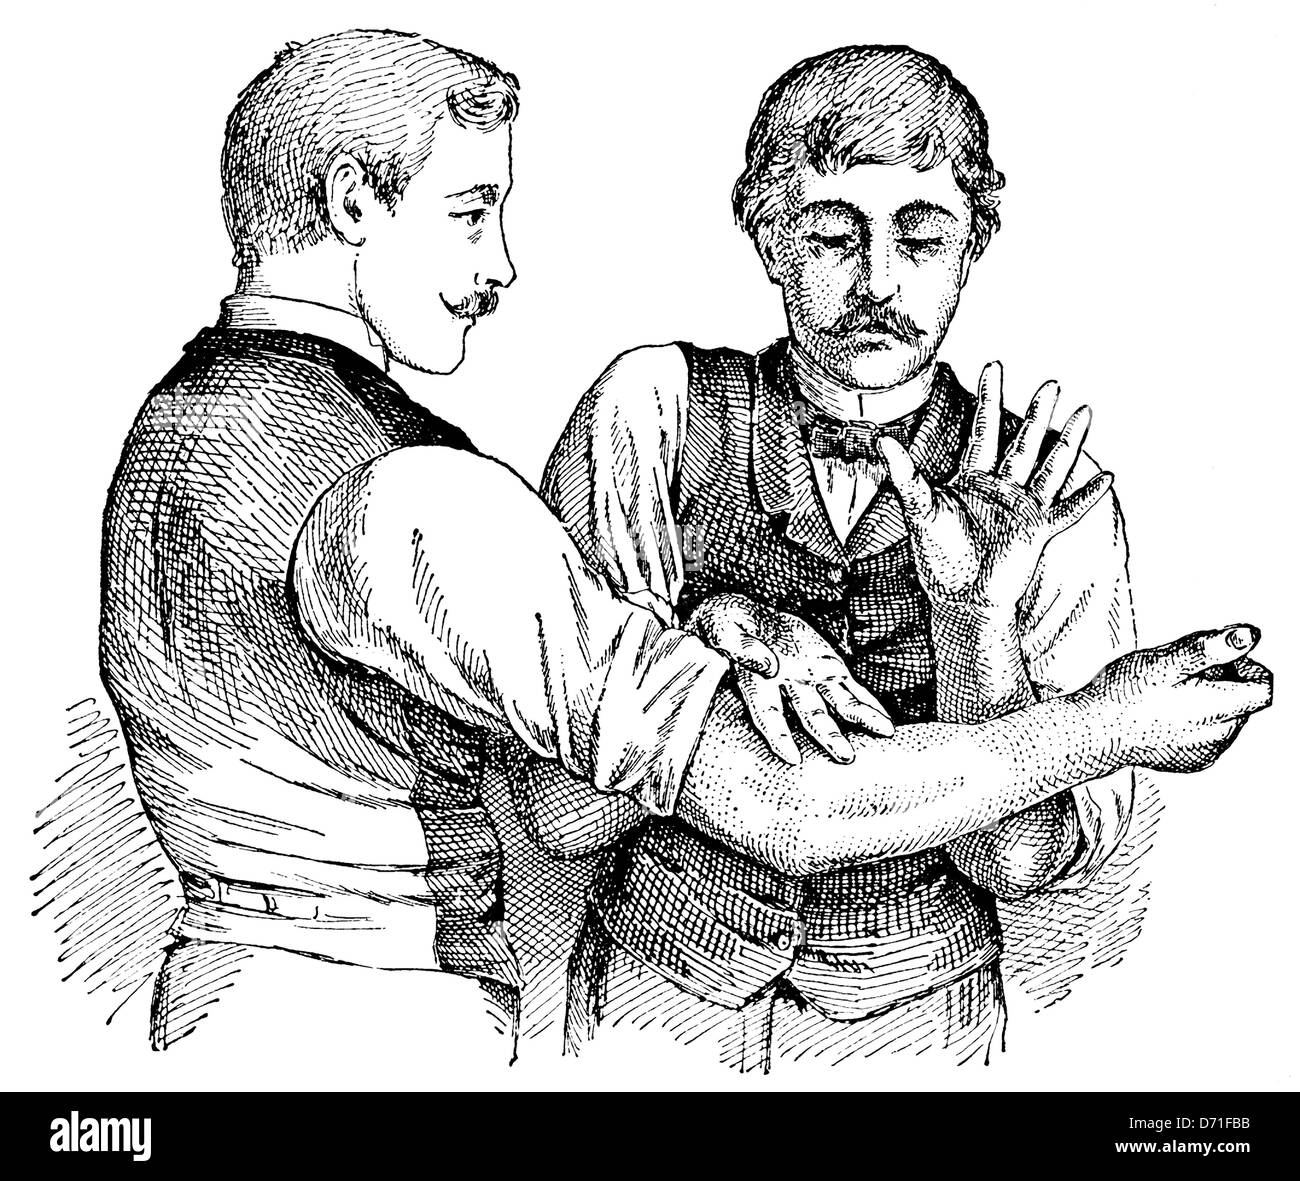 Tapotement tecnica di massaggio, tecniche terapeutiche nei primi del novecento, illustrazione Foto Stock